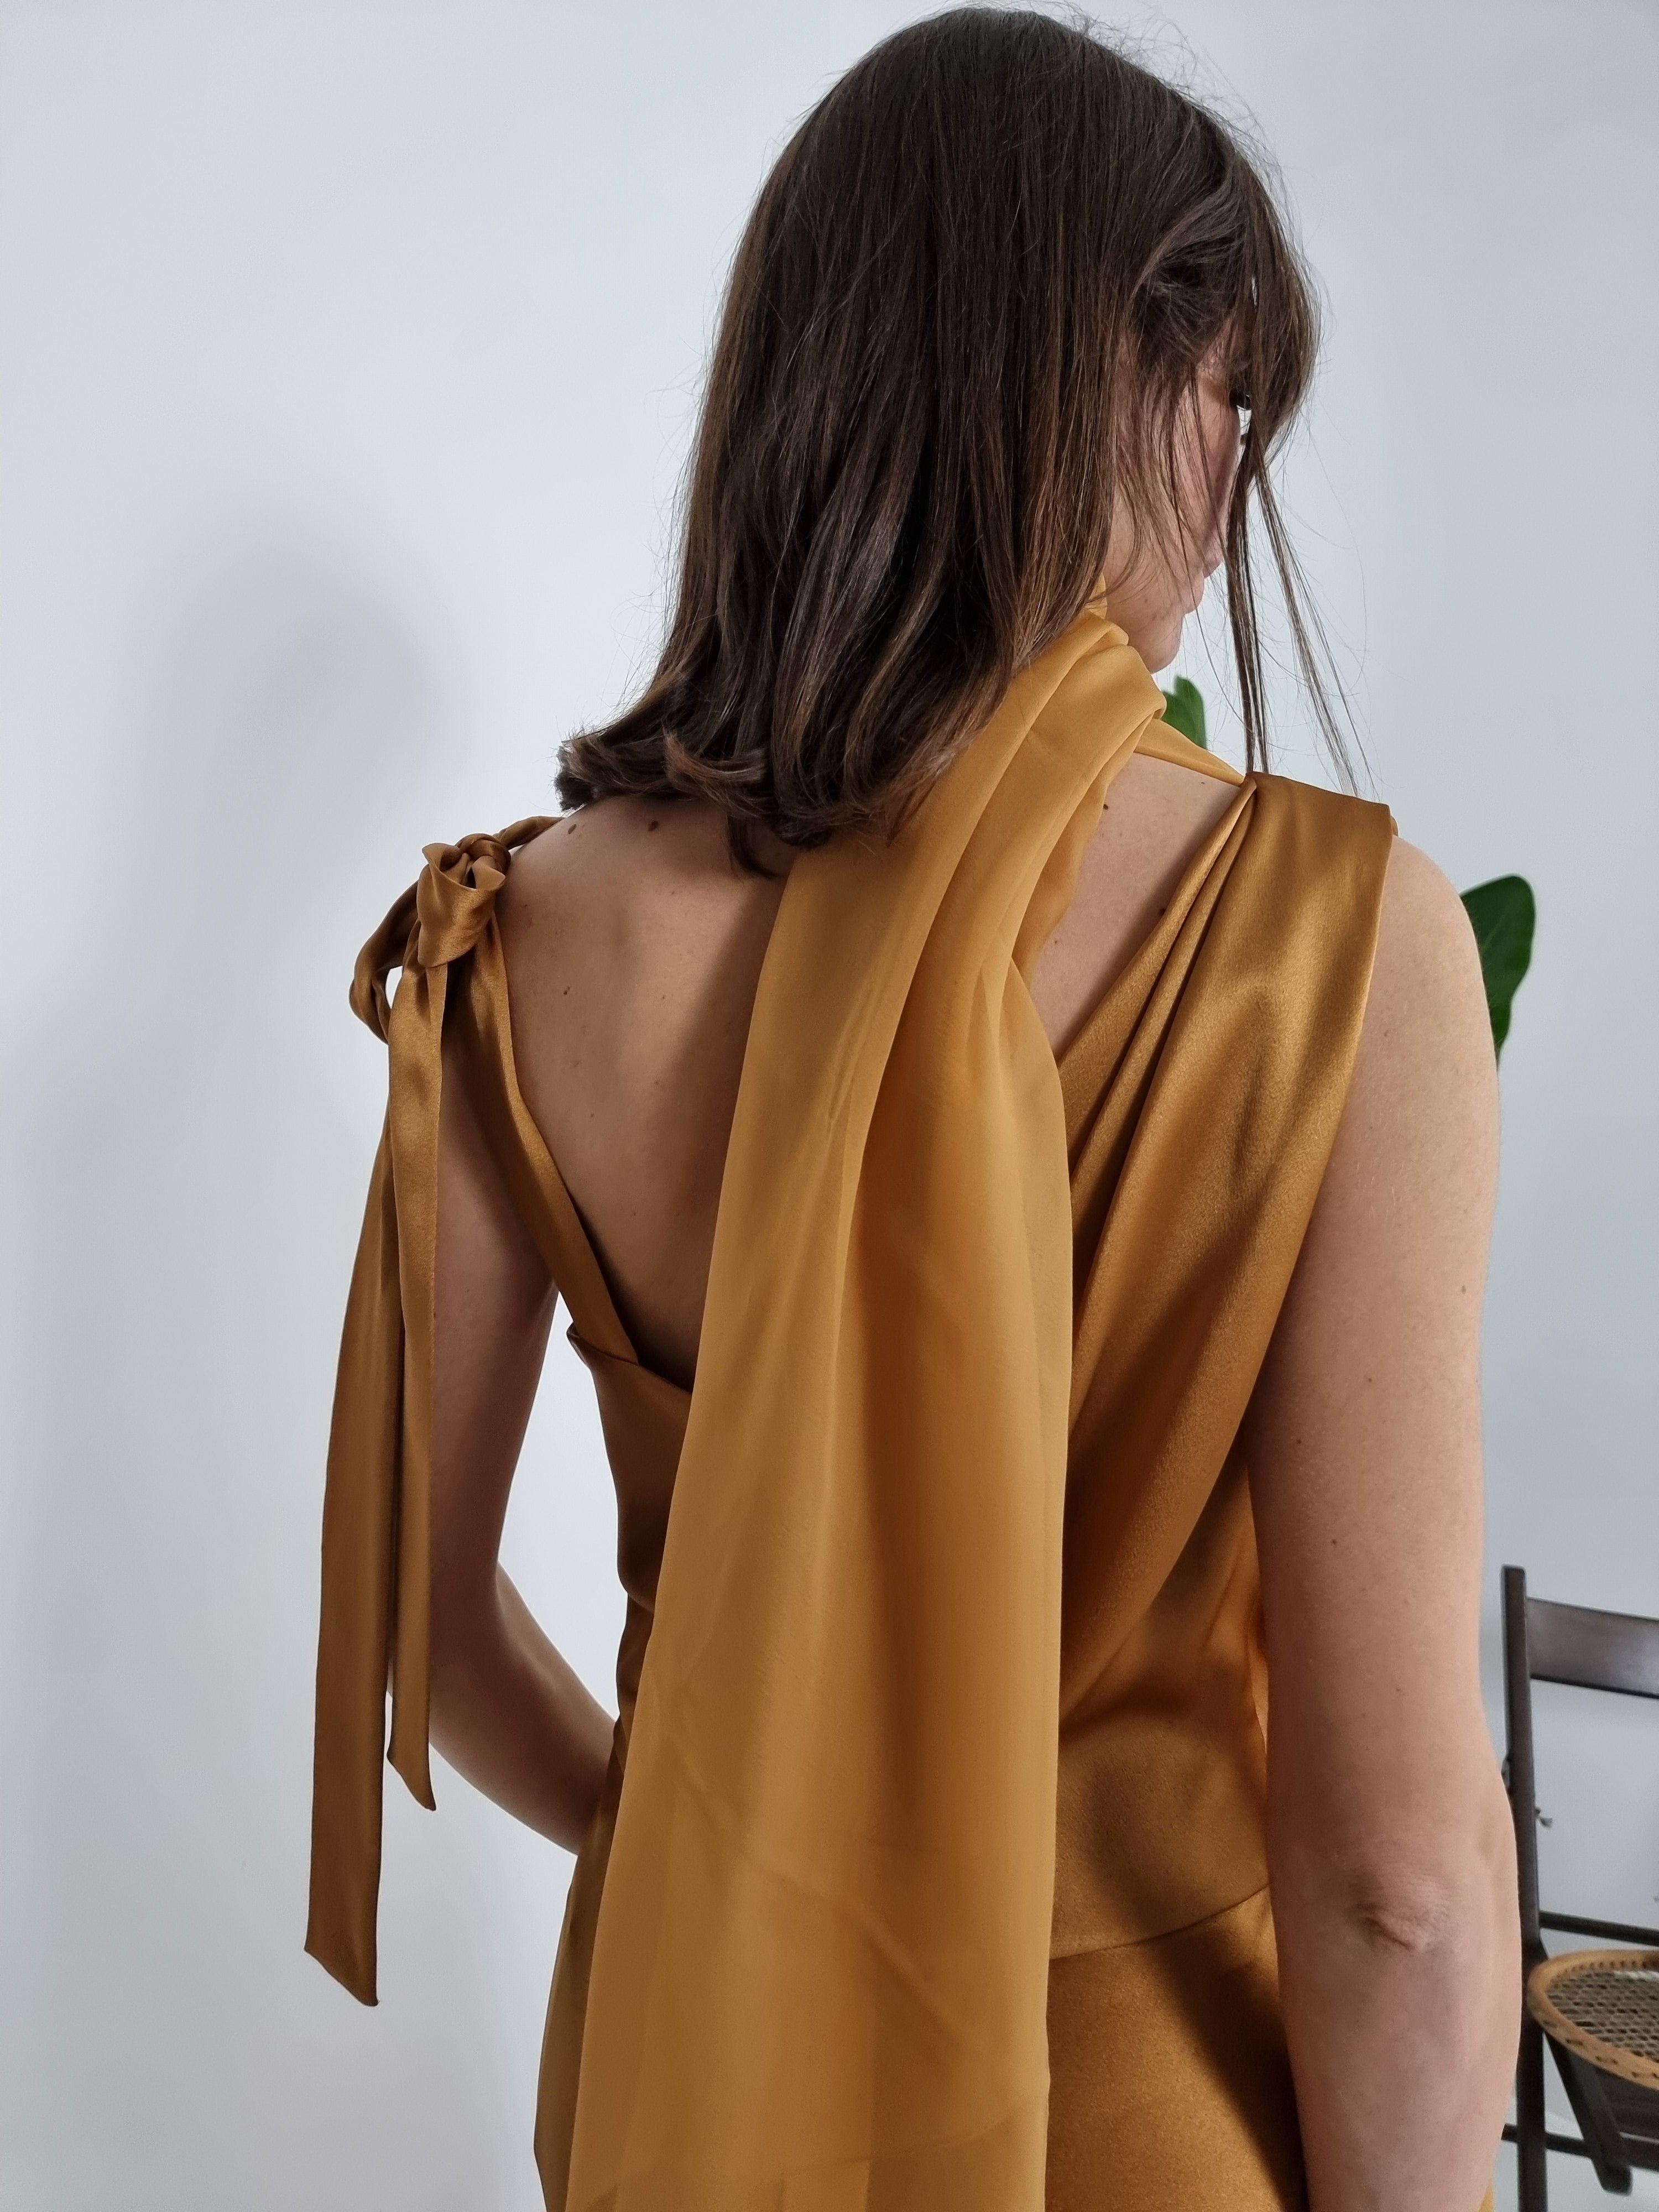 Alberta Ferretti - Abito lungo in seta color ambra